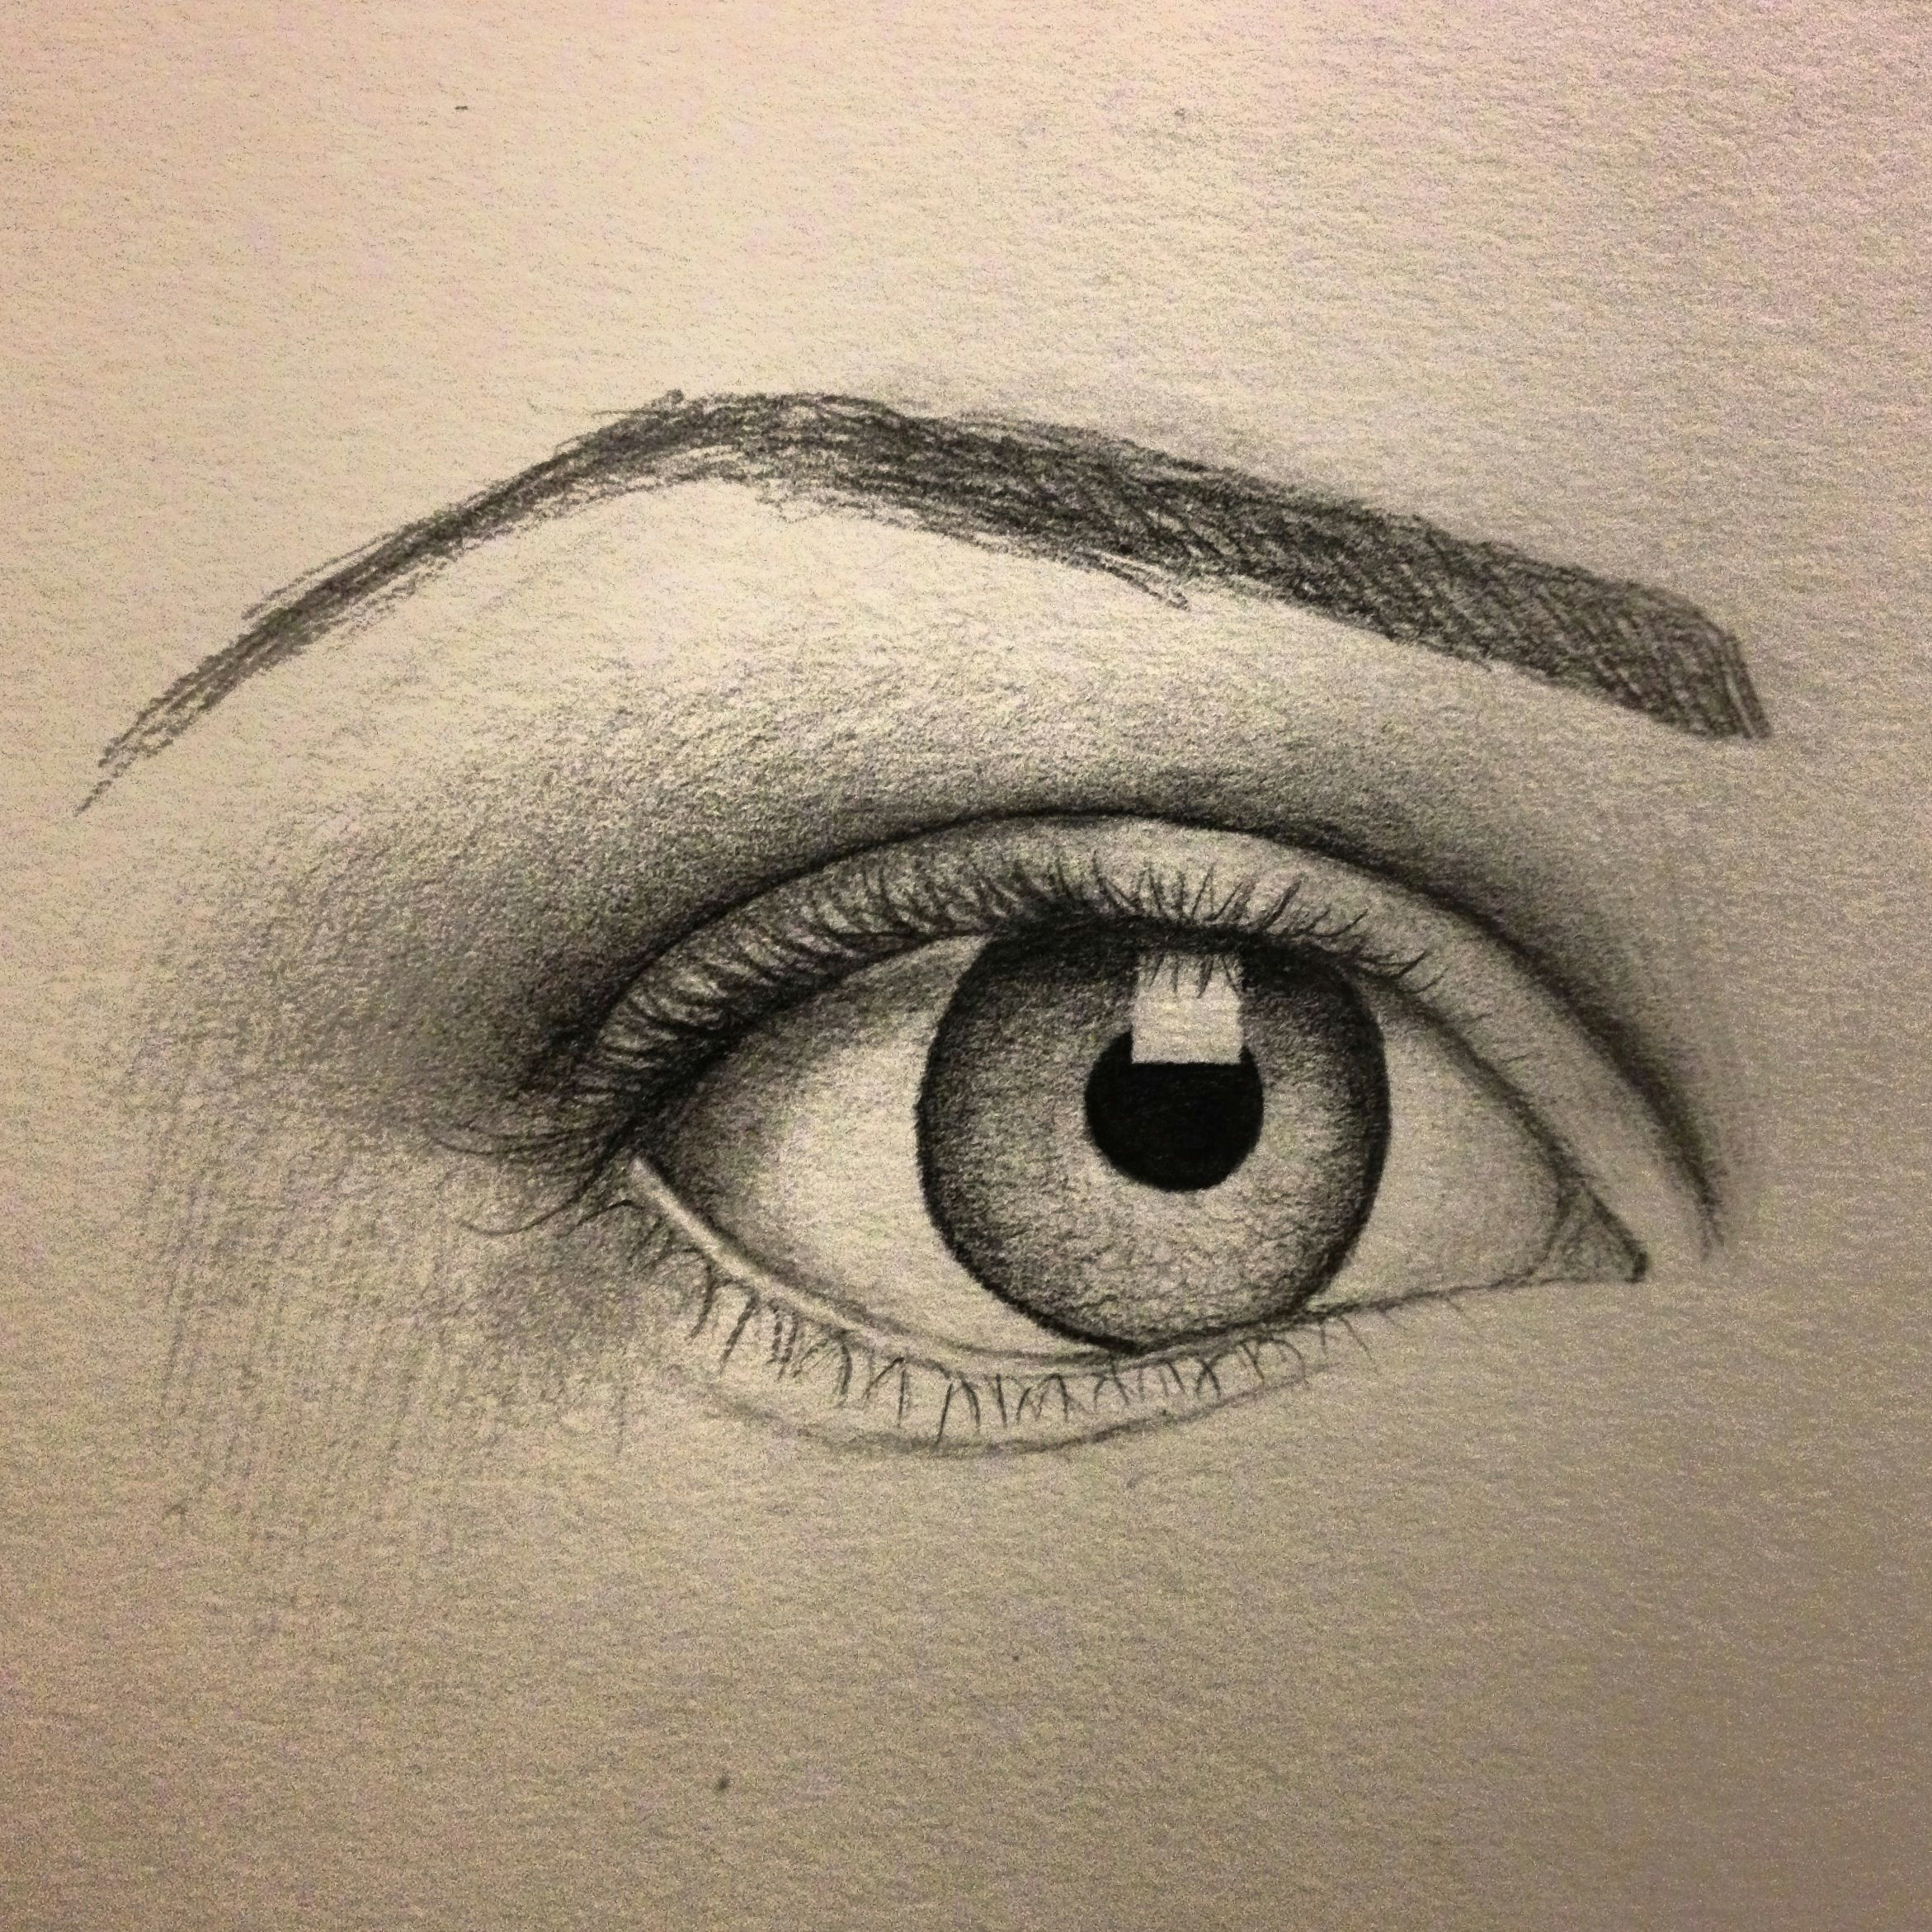 Close Up Drawing Of An Eye Eye Sketch Artist Pamela White Tattoos Pinterest Drawings